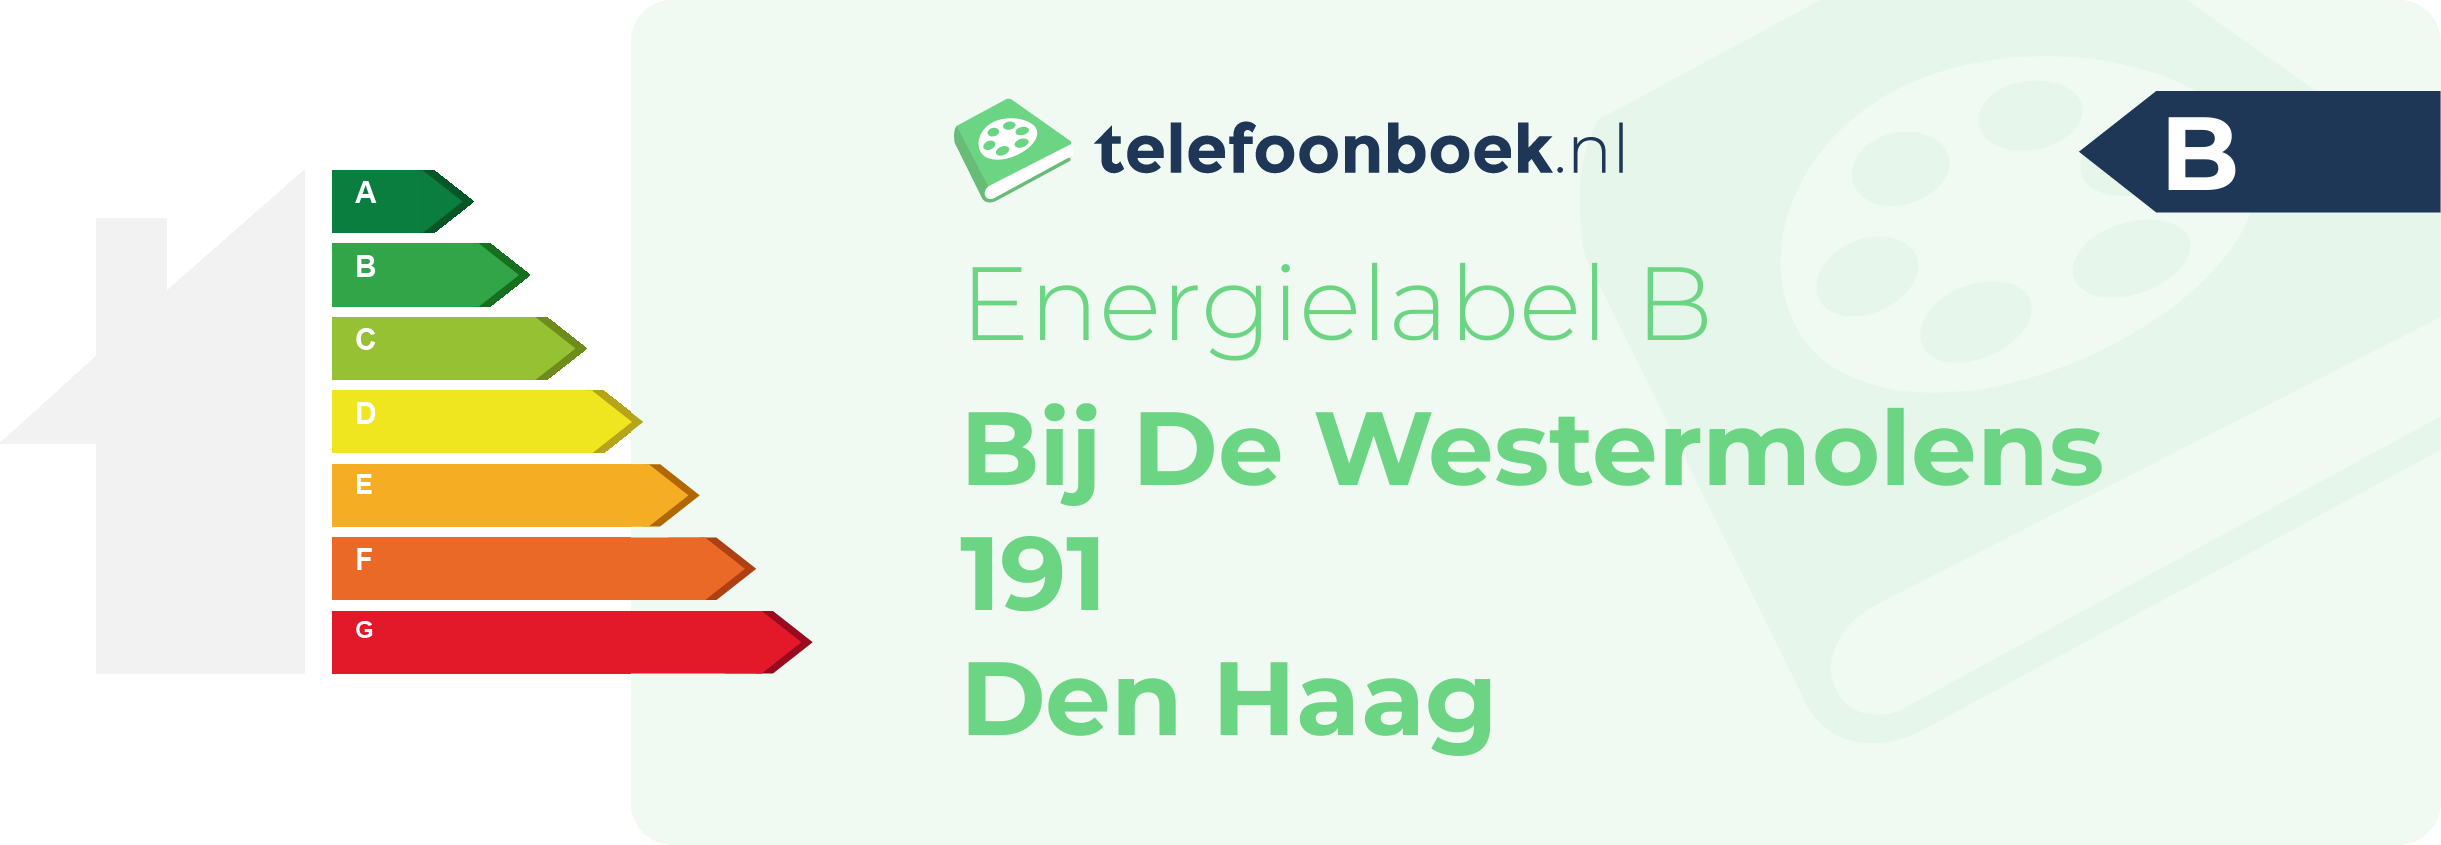 Energielabel Bij De Westermolens 191 Den Haag